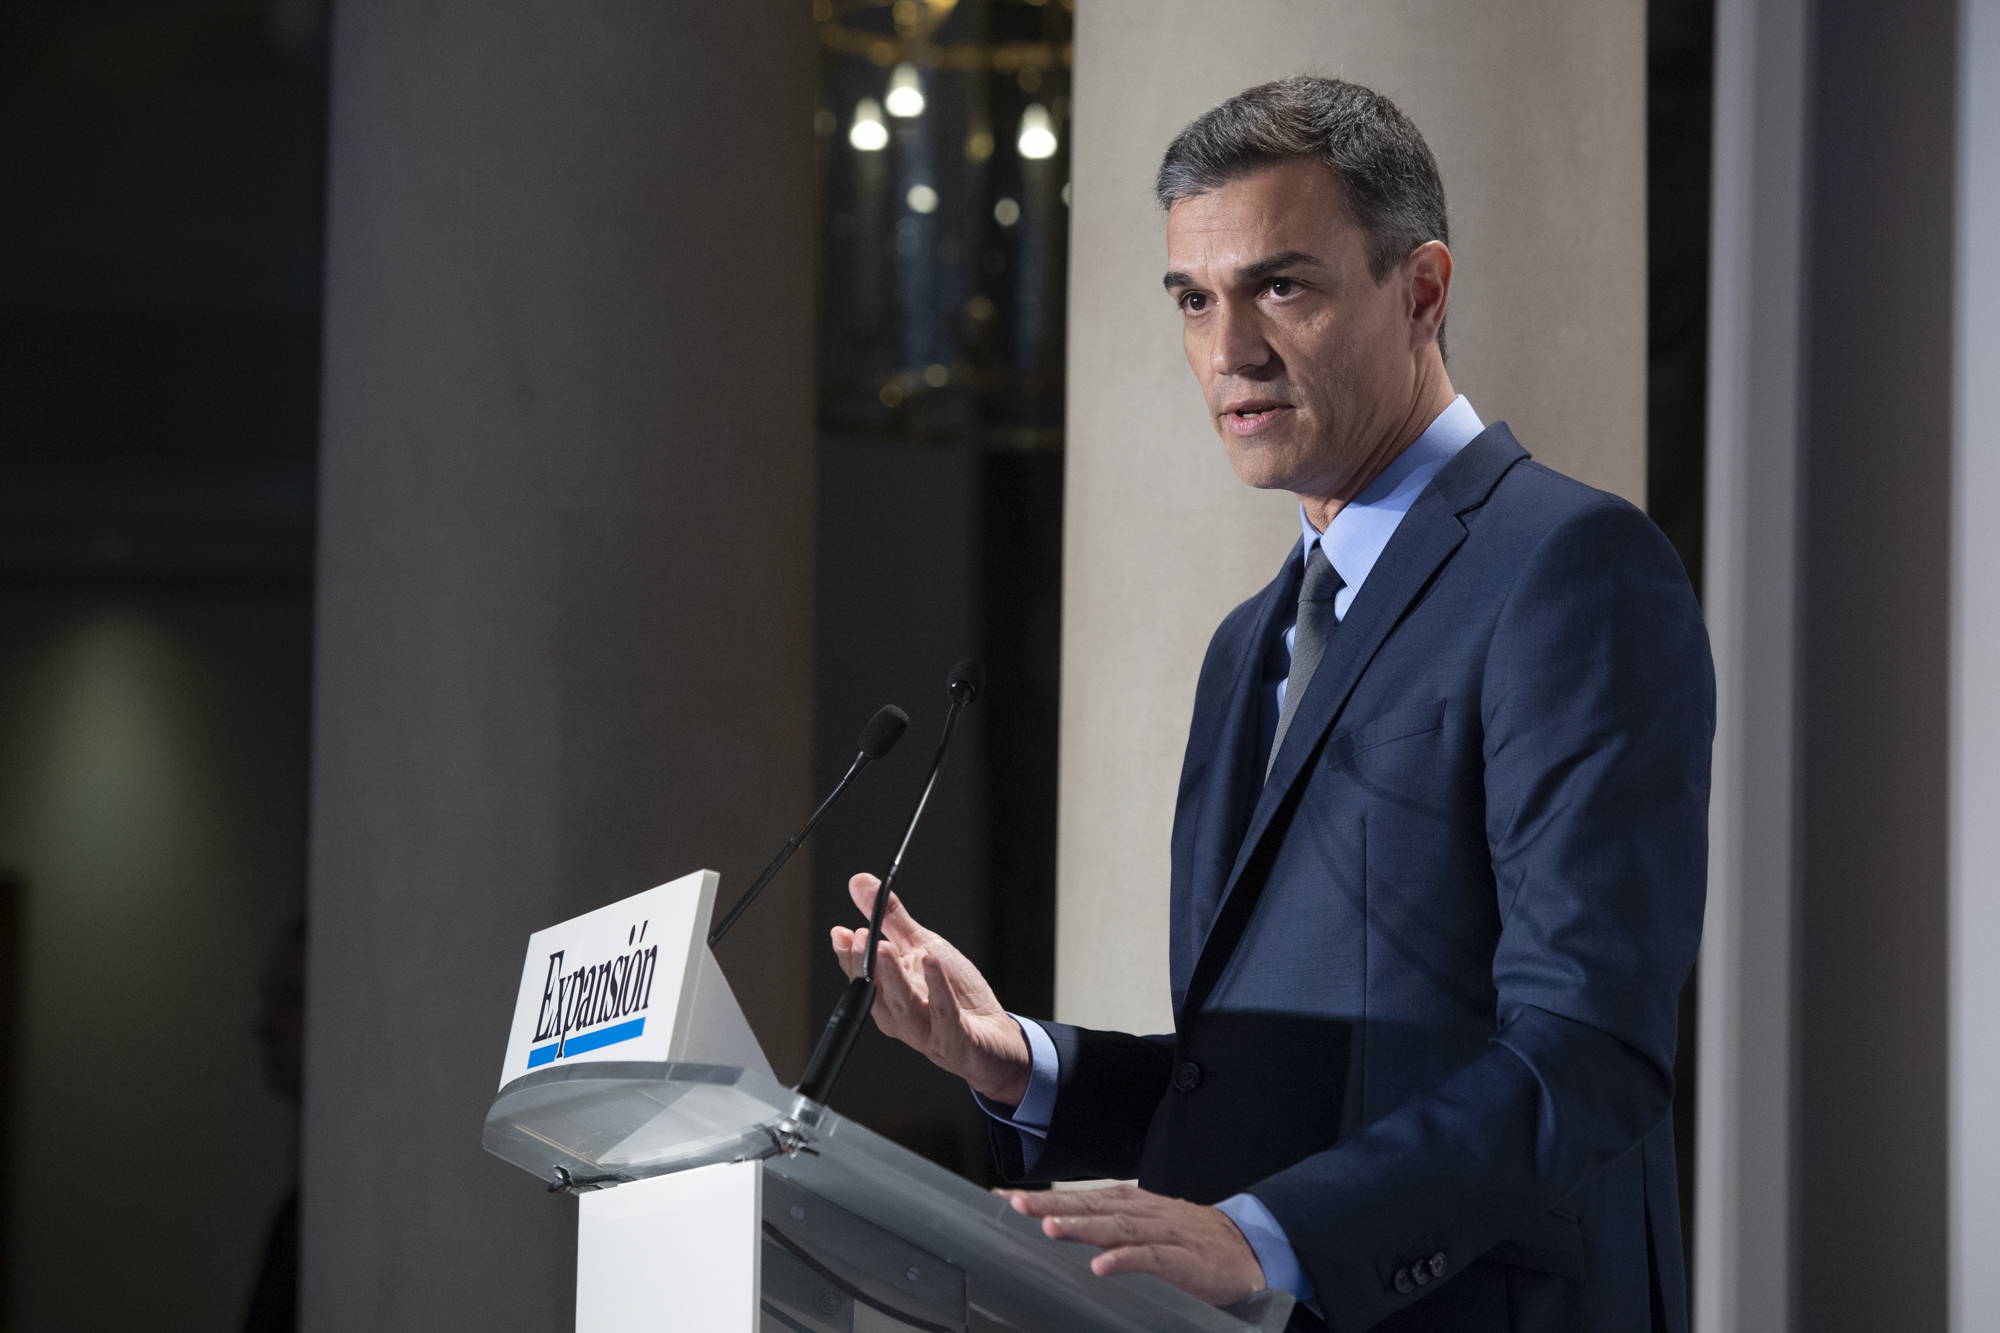 ESPAÑA: Sánchez desglosa el plan de reformas económicas en el encuentro anual del diario Expansión